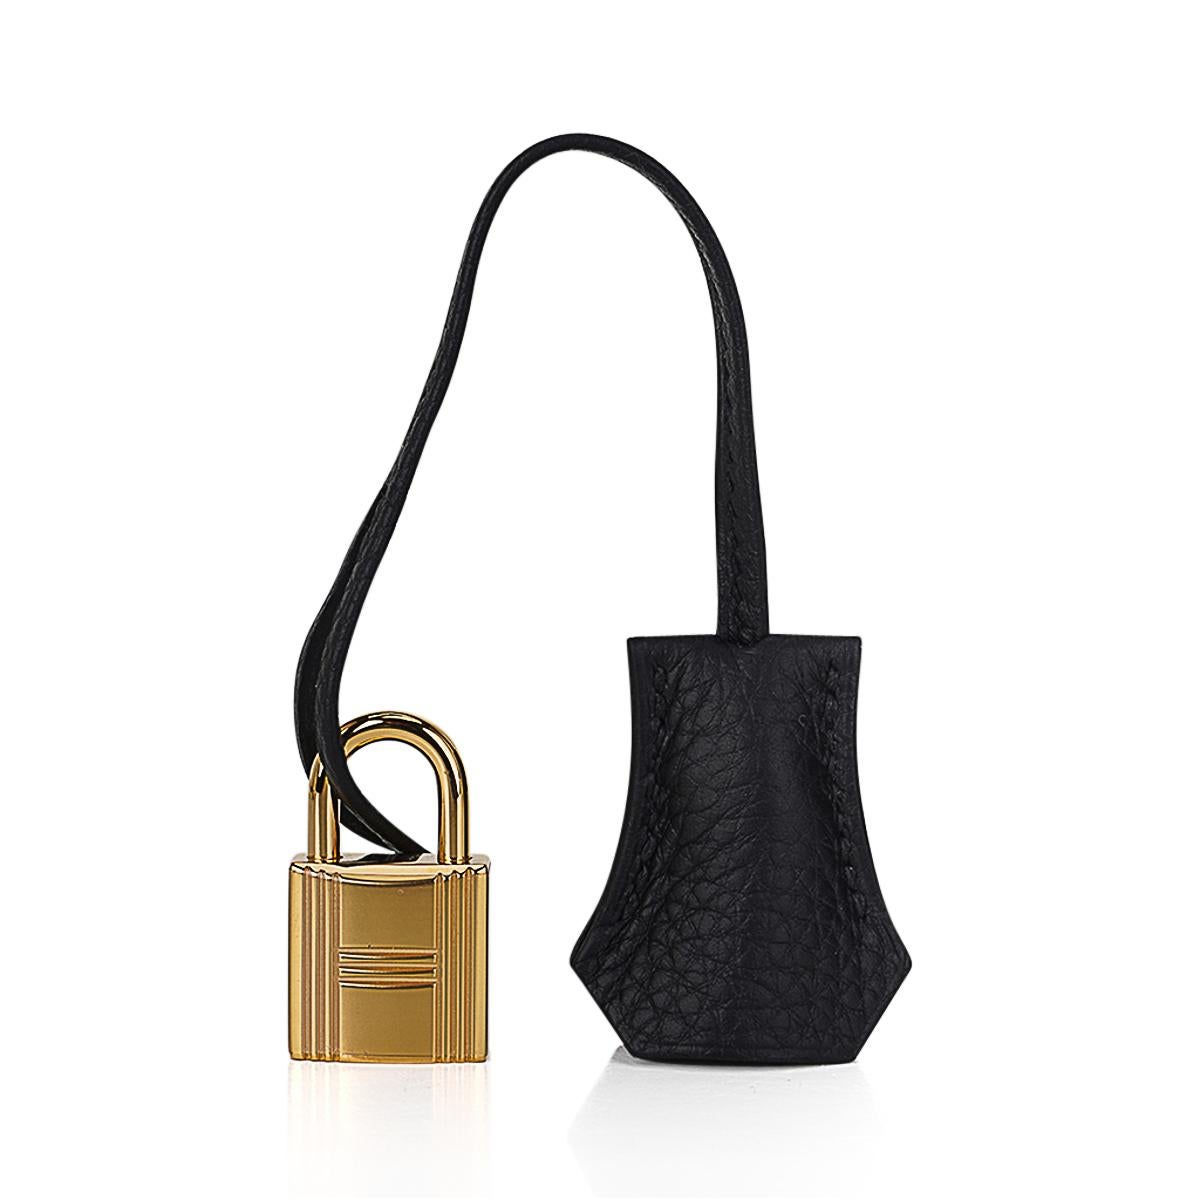 Hermes Birkin 25 Black Bag Gold Hardware Togo Leather 5